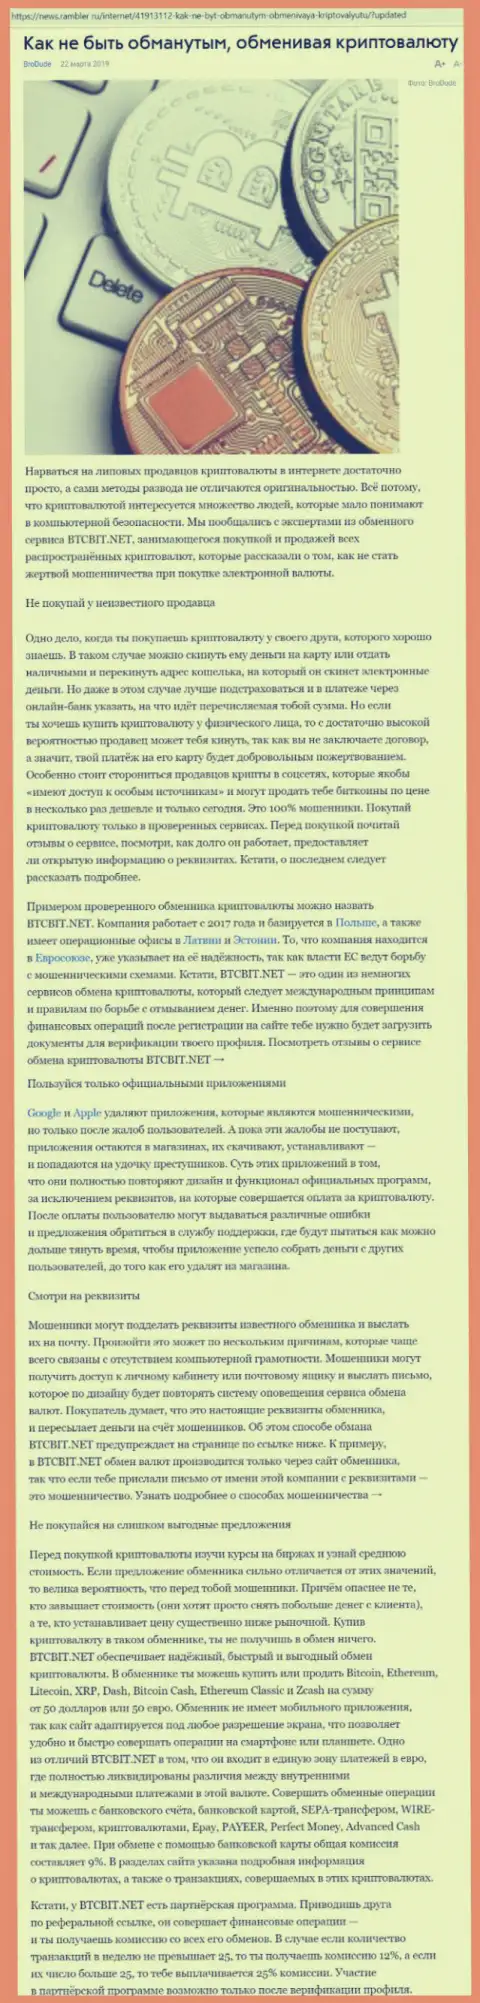 Статья об онлайн обменнике БТЦБИТ Нет на news rambler ru